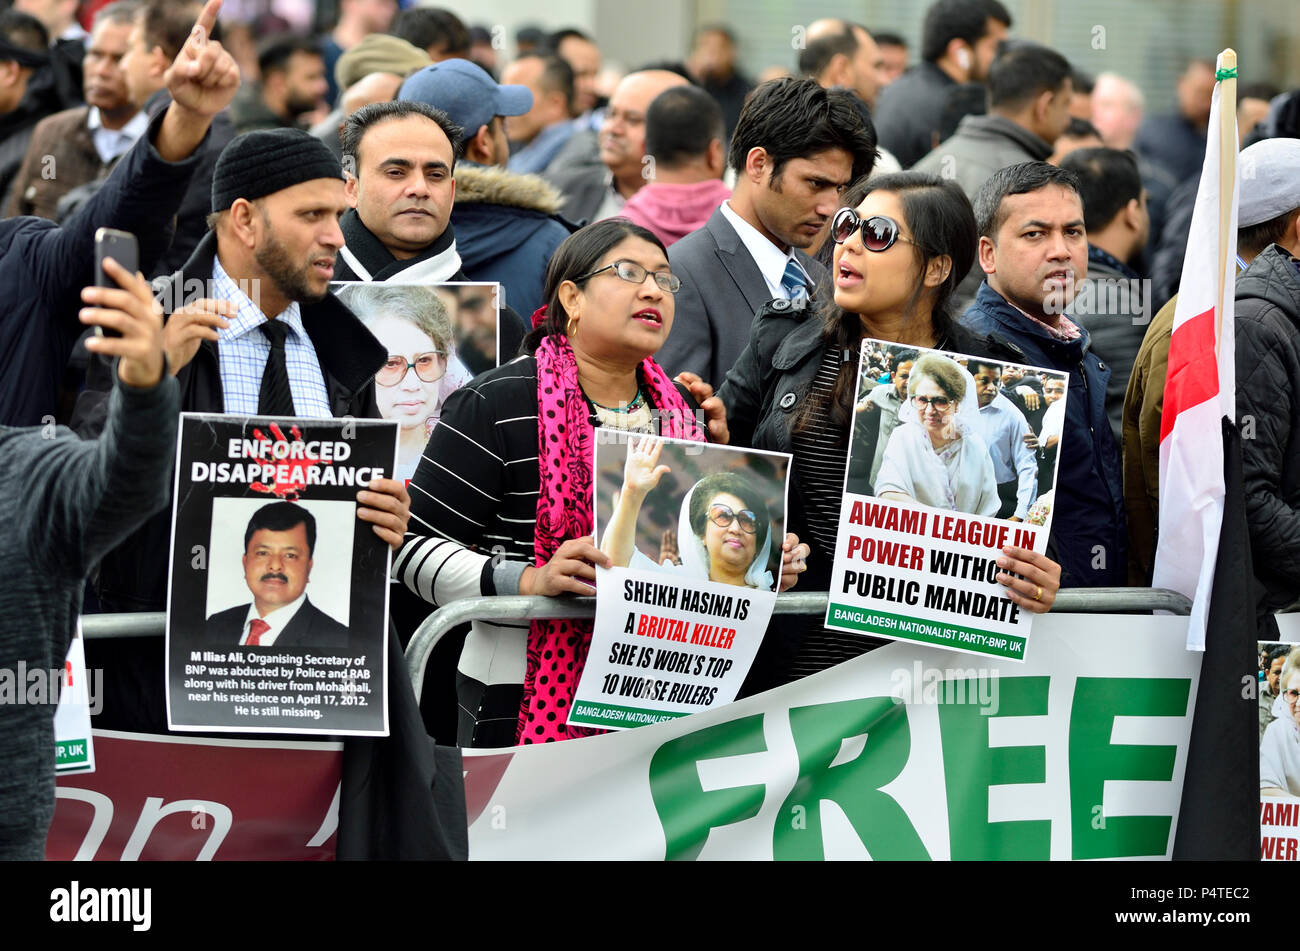 Londres, 16 de abril de 2018. Manifestantes de Bangladesh frente al centro de conferencias Queen Elizabeth en el inicio de la Reunión de Jefes de Gobierno del Commonwealth con Foto de stock